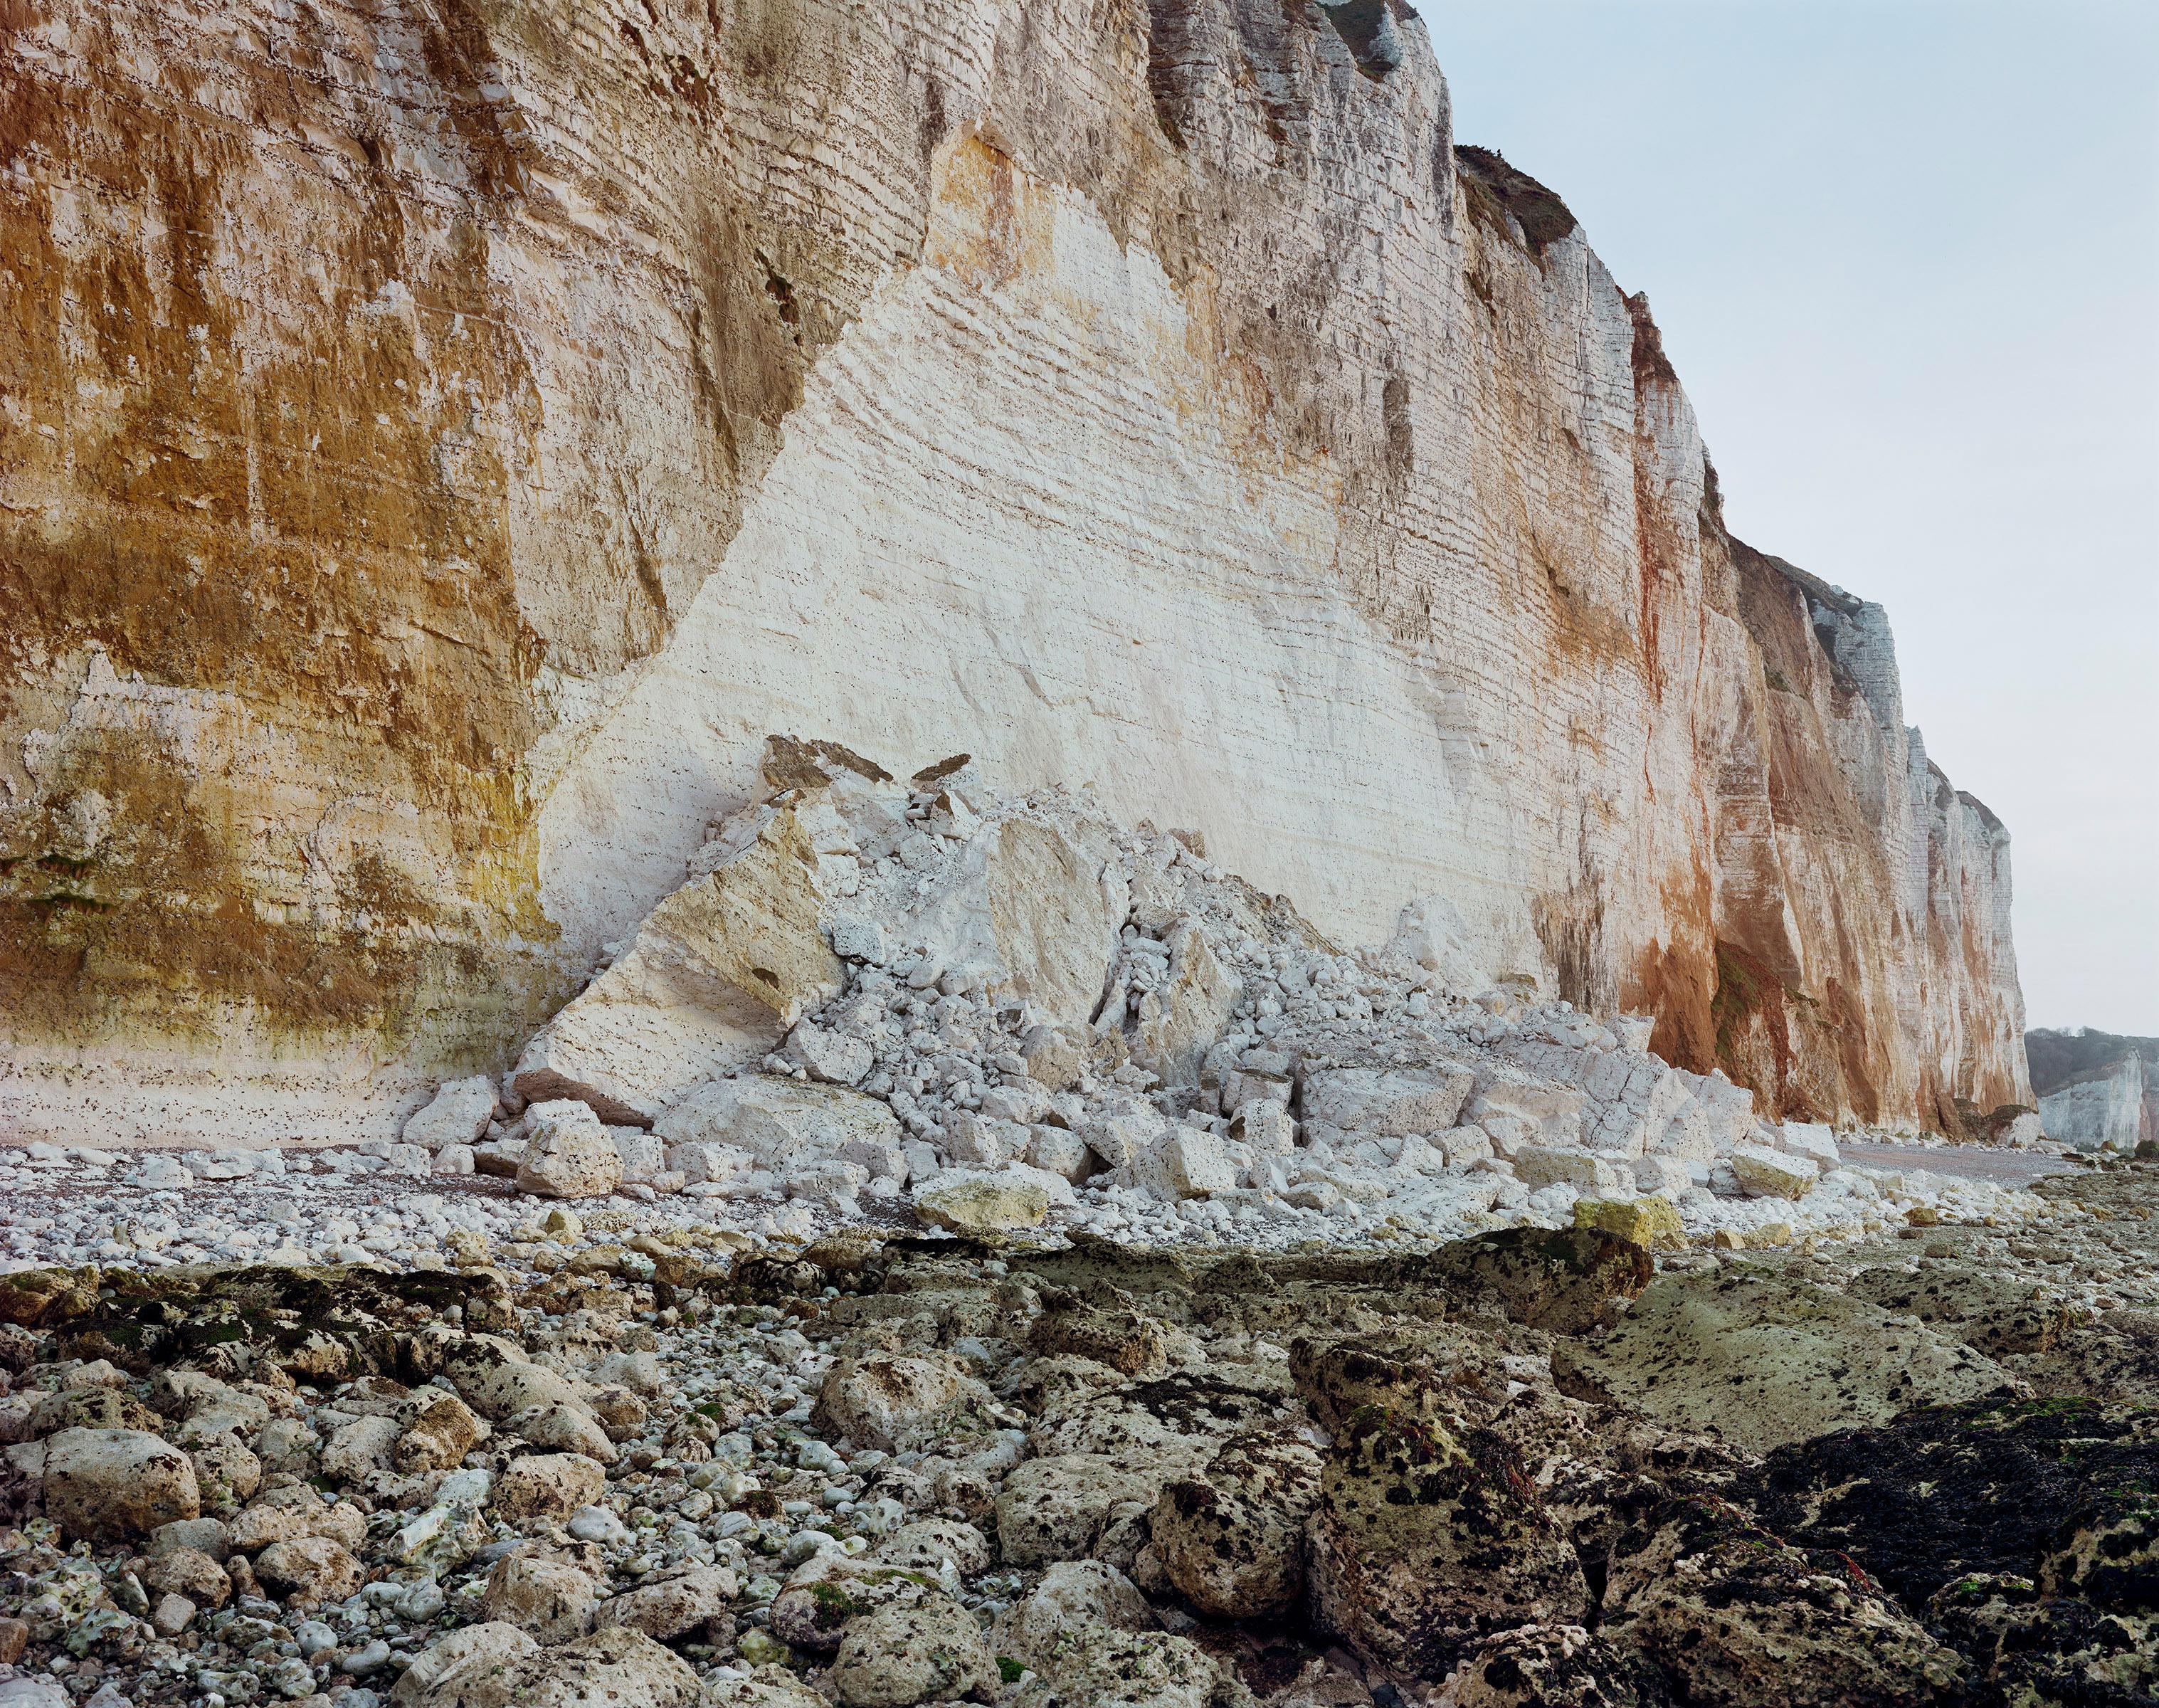 Signé, daté et numéroté au dos
Impression à jet d'encre
46 1/2 x 55 1/2 inches / 118 x 141 cm
Edition de 6 + 2 APs

Jem Southam (né en 1950) est l'un des photographes de paysages britanniques les plus respectés par la critique. Célébré pour son